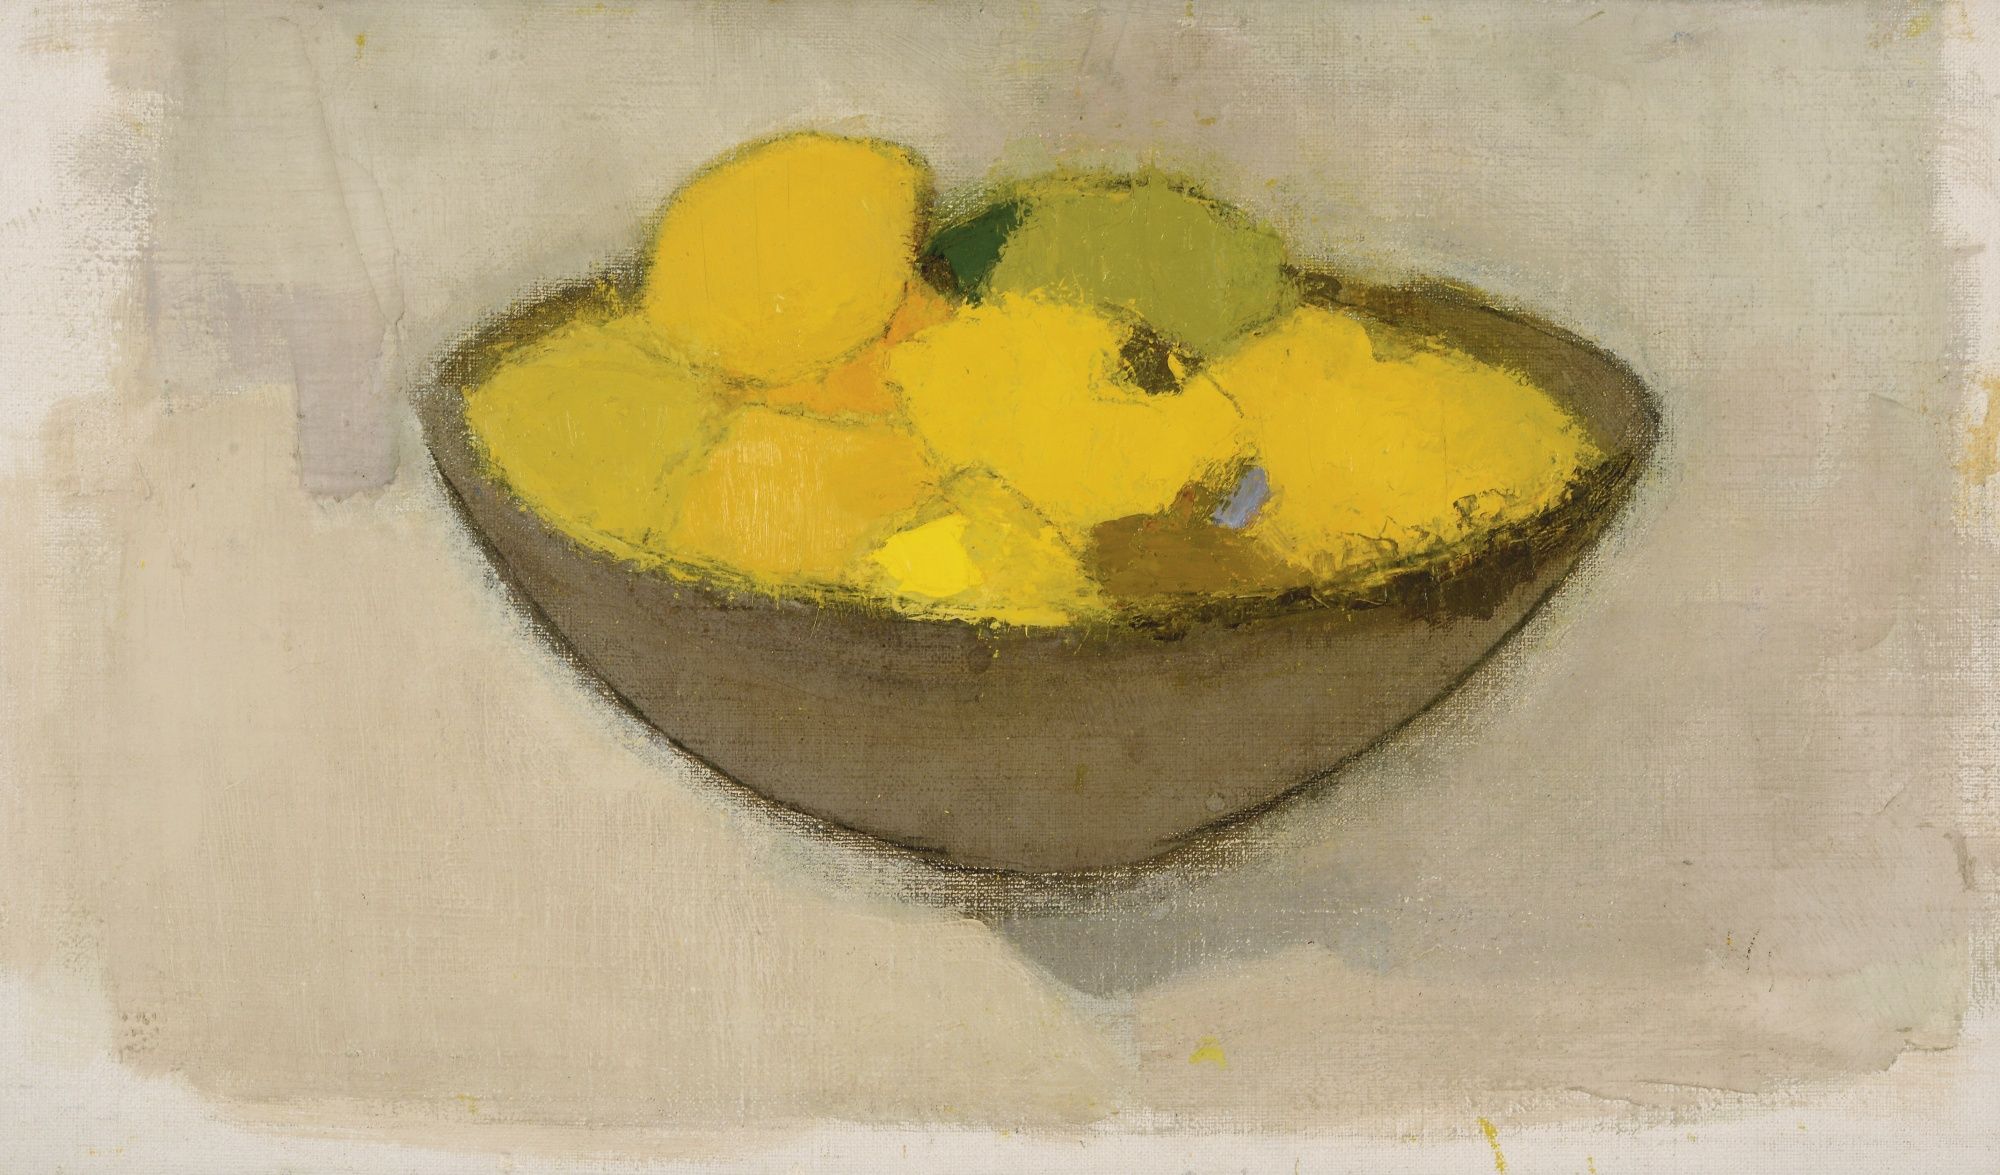 Zitronen in der Schüssel by Helene Schjerfbeck - 1934 - 34.5 x 59.5cm Private Sammlung